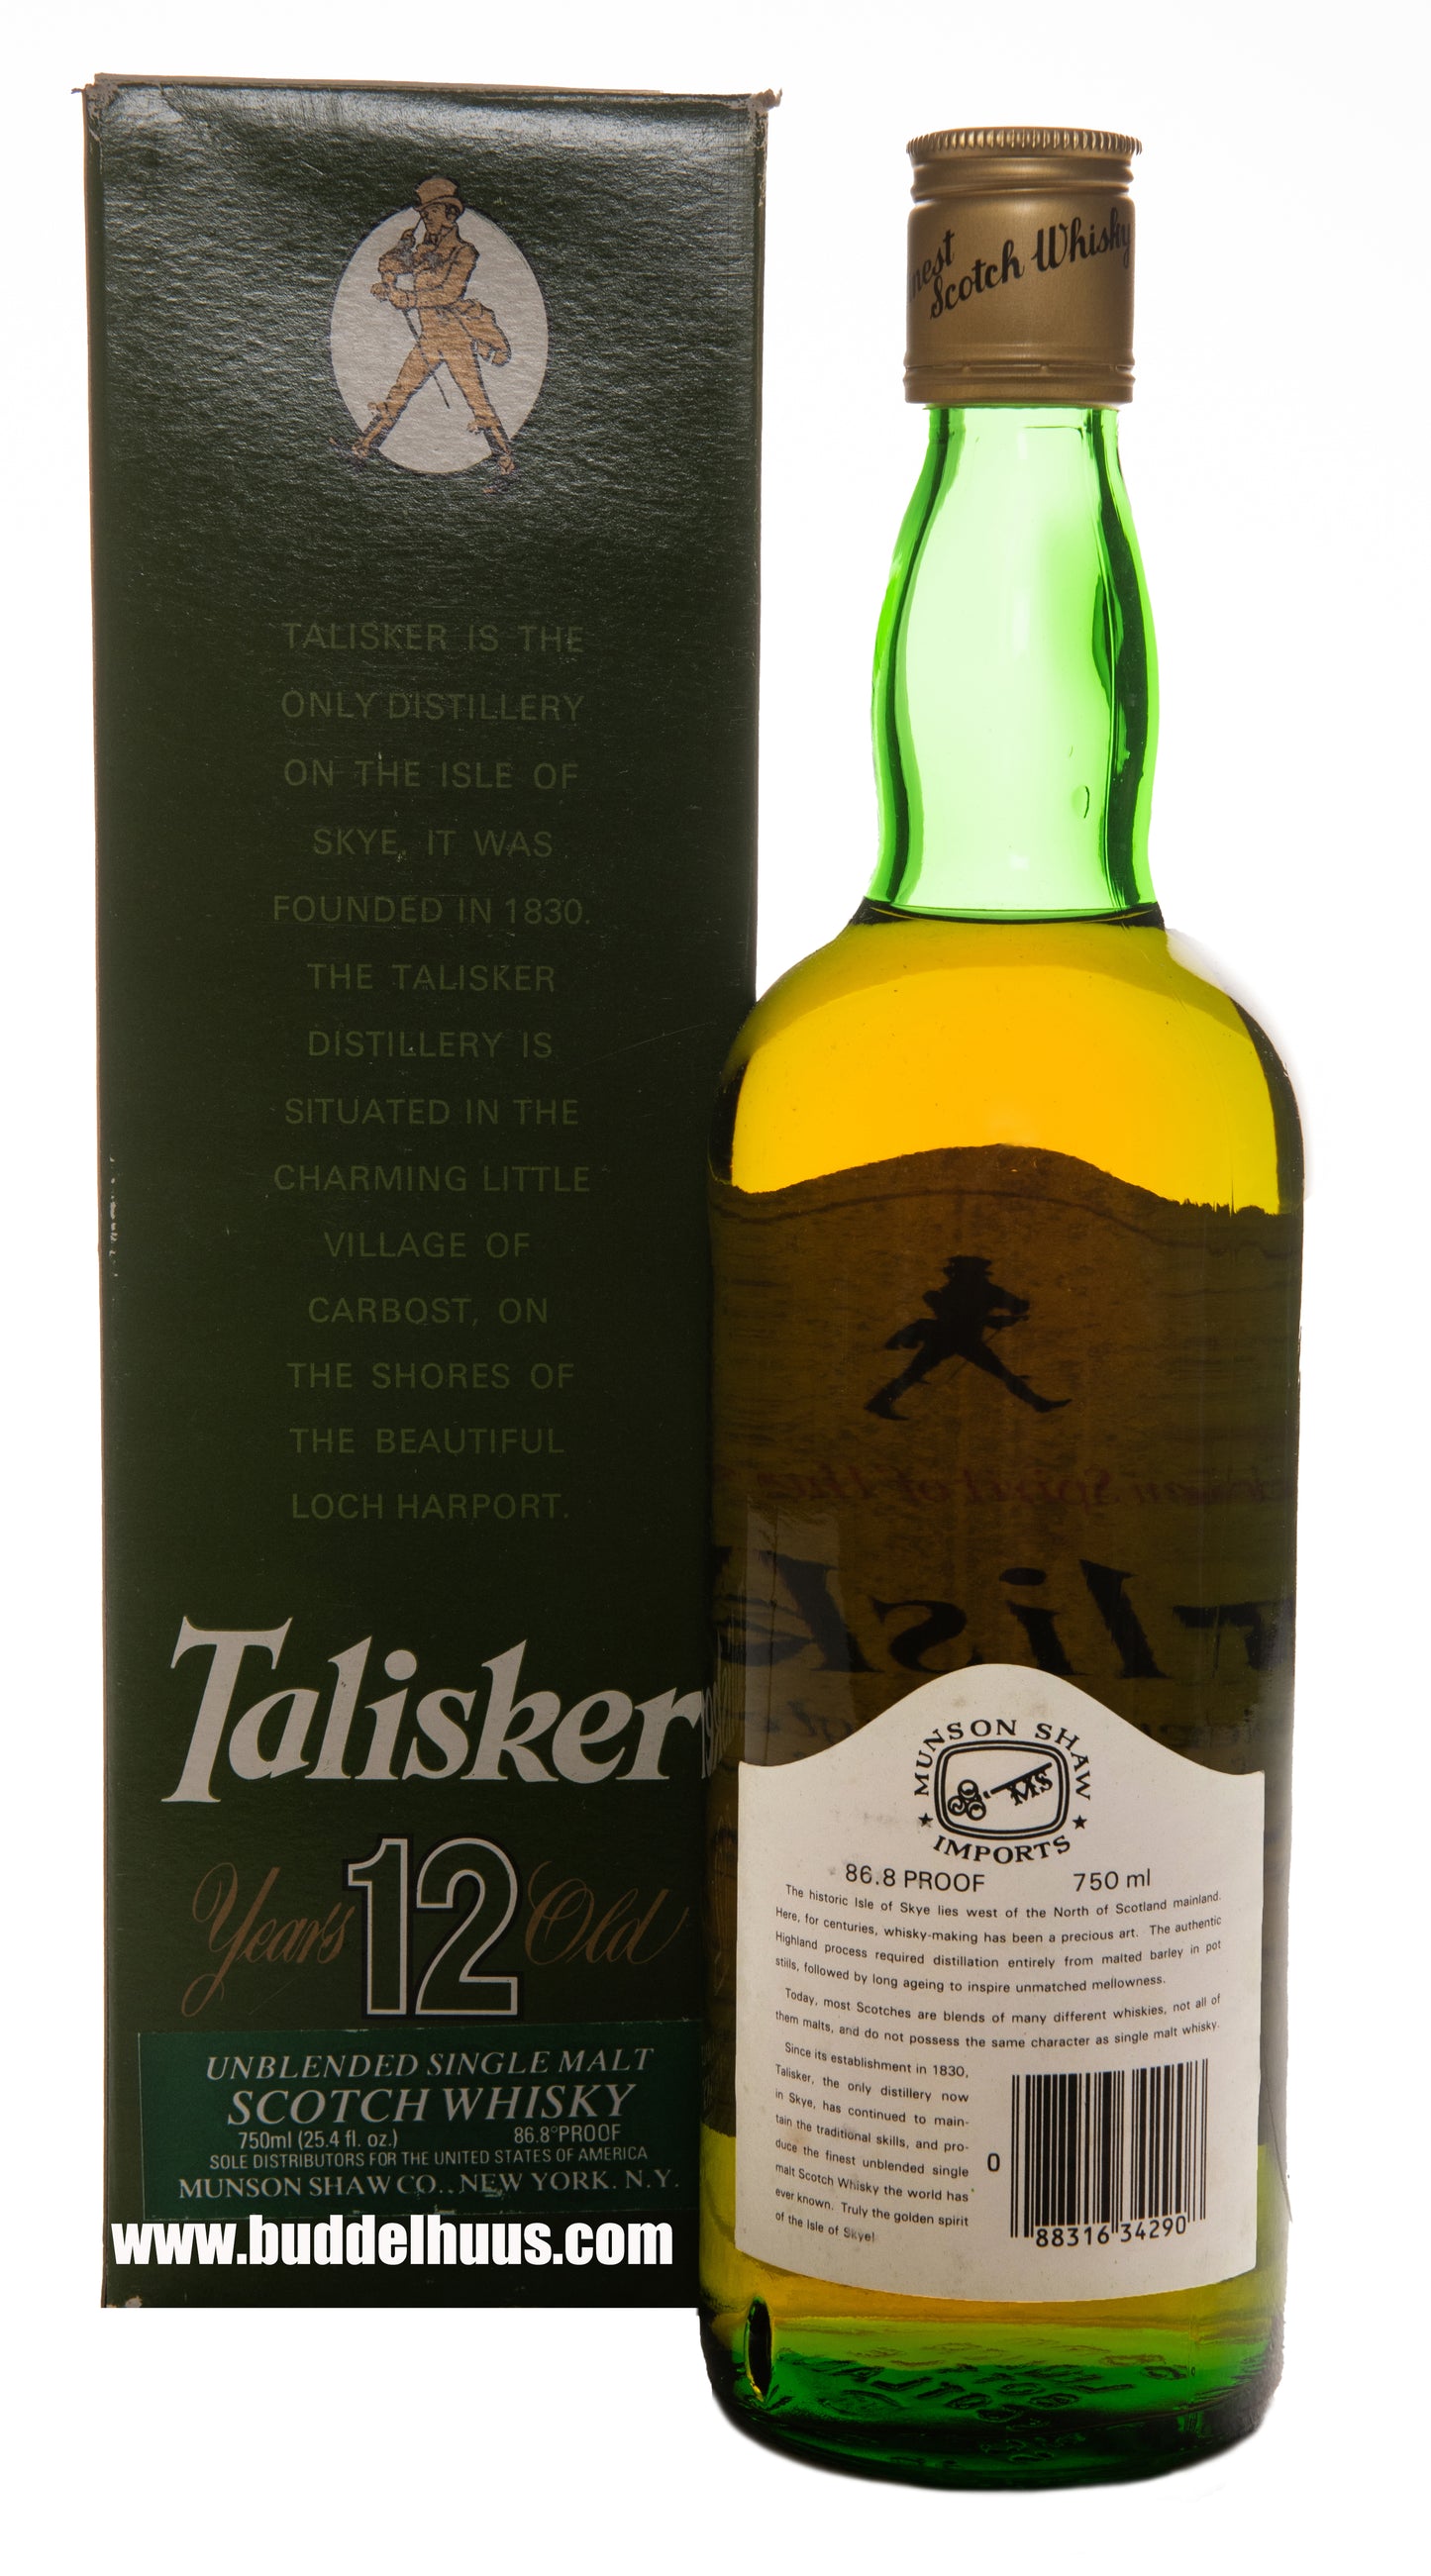 Talisker 12 yo Unblended Single Malt by John Walker & Sons (1980s bottling)